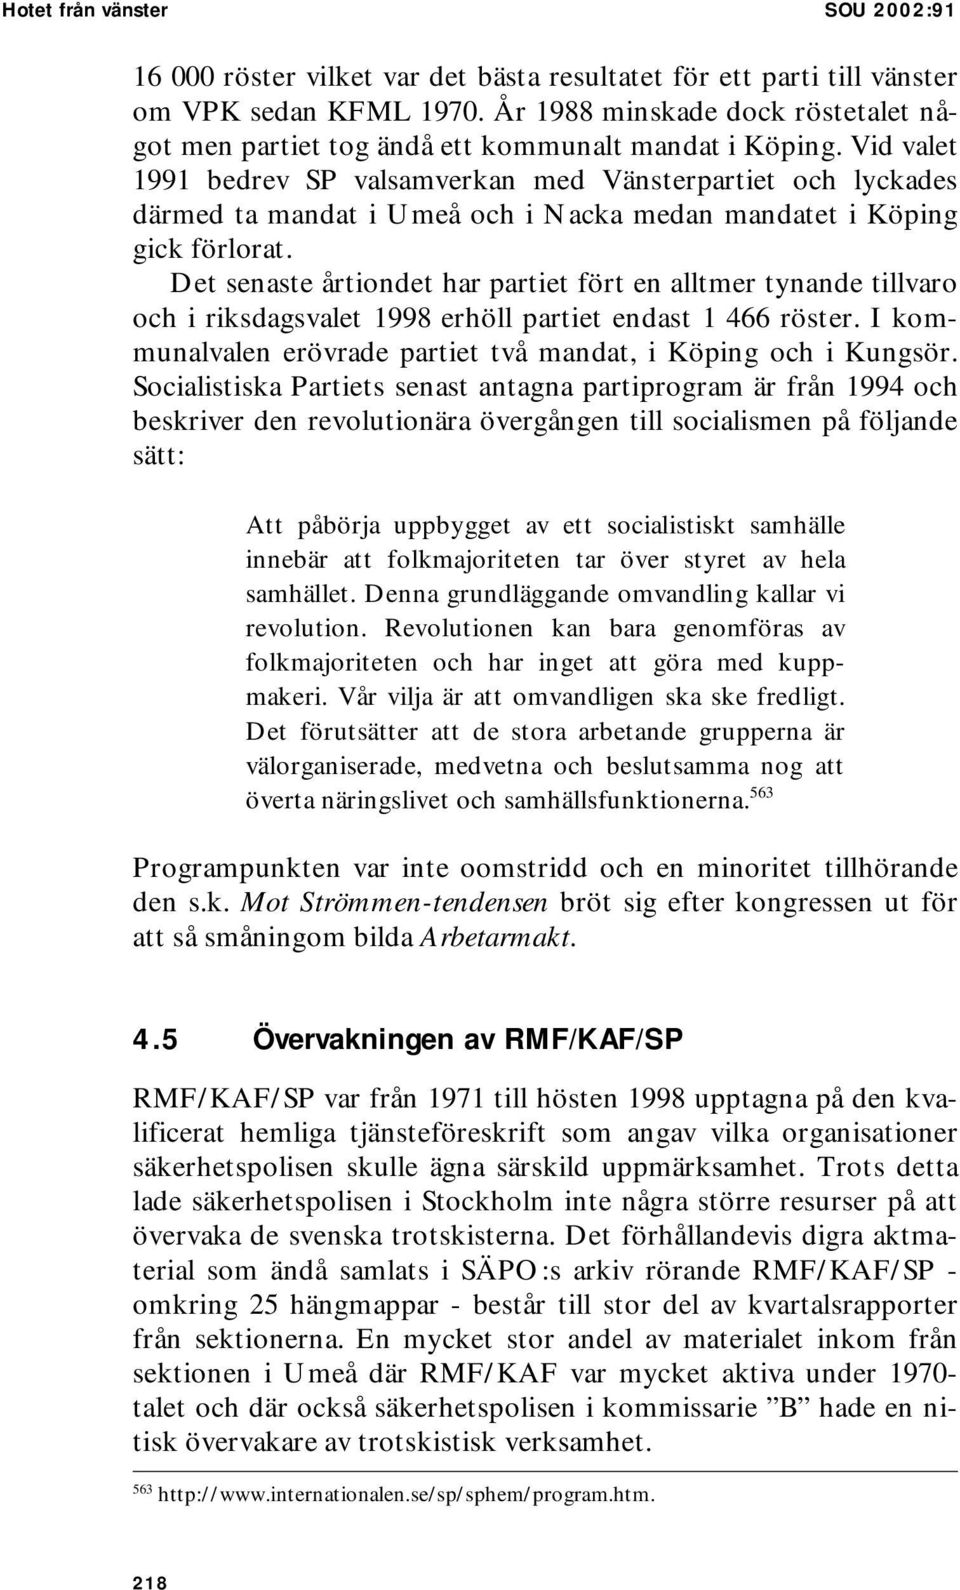 Vid valet 1991 bedrev SP valsamverkan med Vänsterpartiet och lyckades därmed ta mandat i Umeå och i Nacka medan mandatet i Köping gick förlorat.